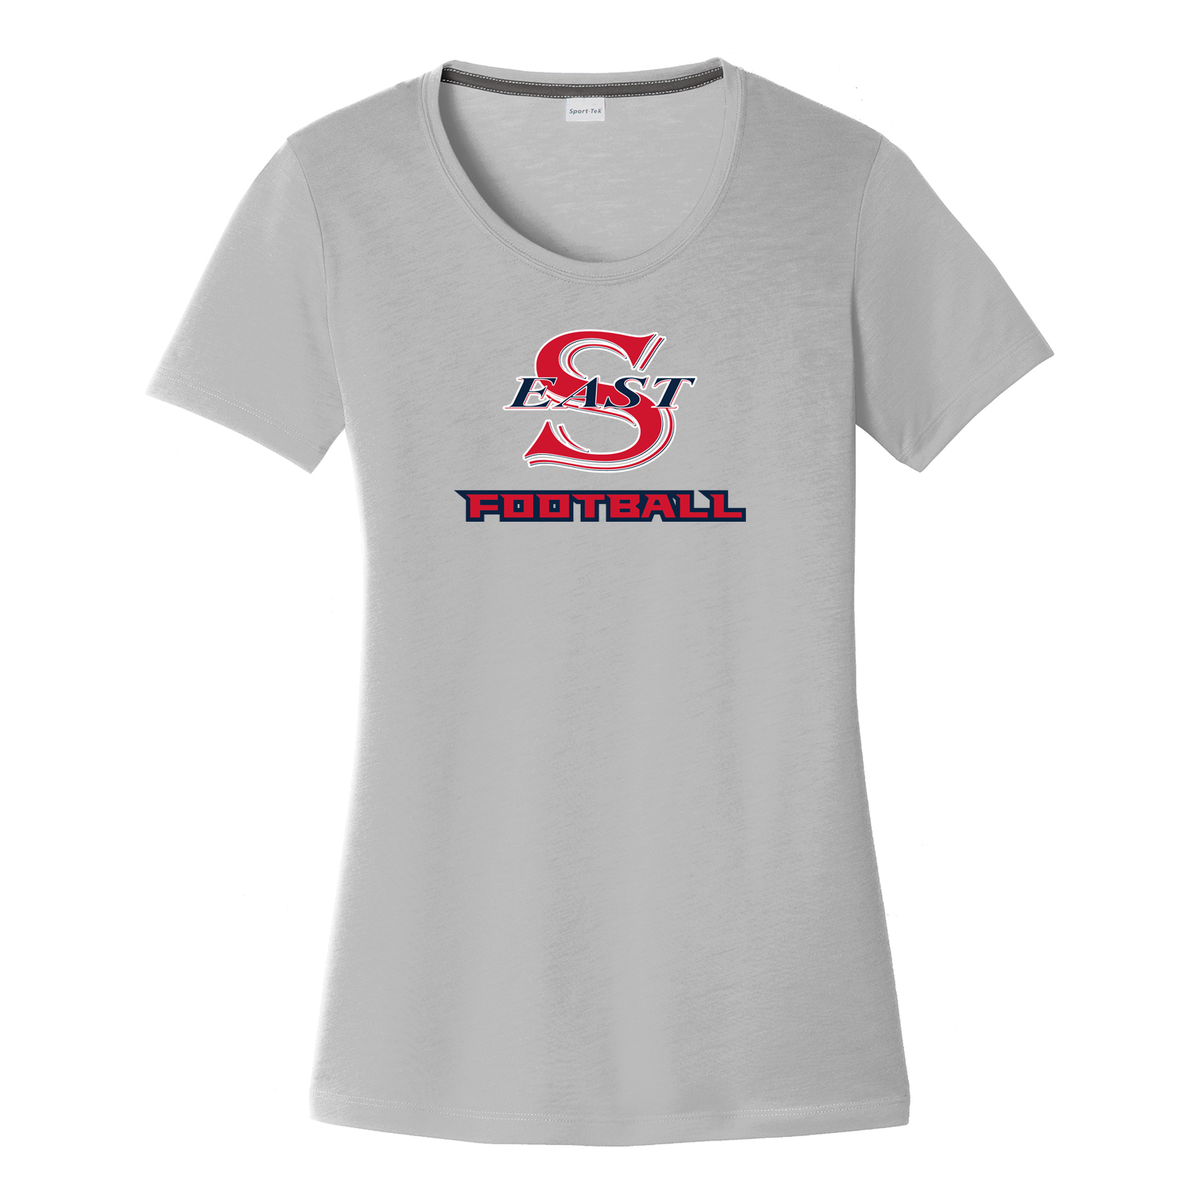 Smithtown East Football Women's CottonTouch Performance T-Shirt